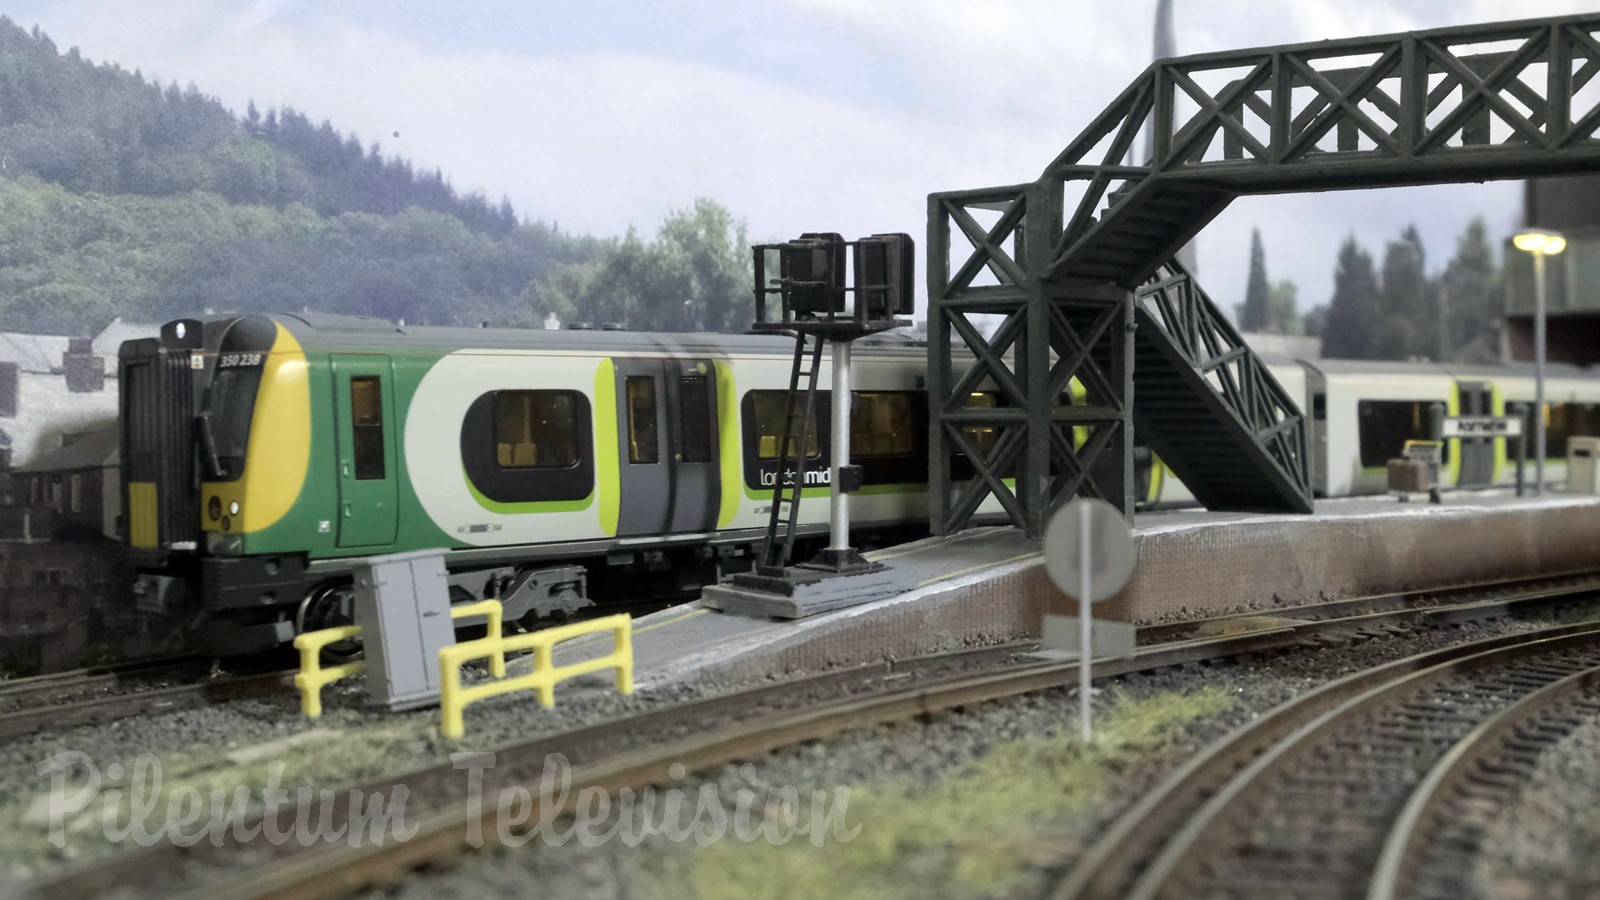 Modélisme ferroviaire britannique - Trains miniatures de Hornby et Bachmann